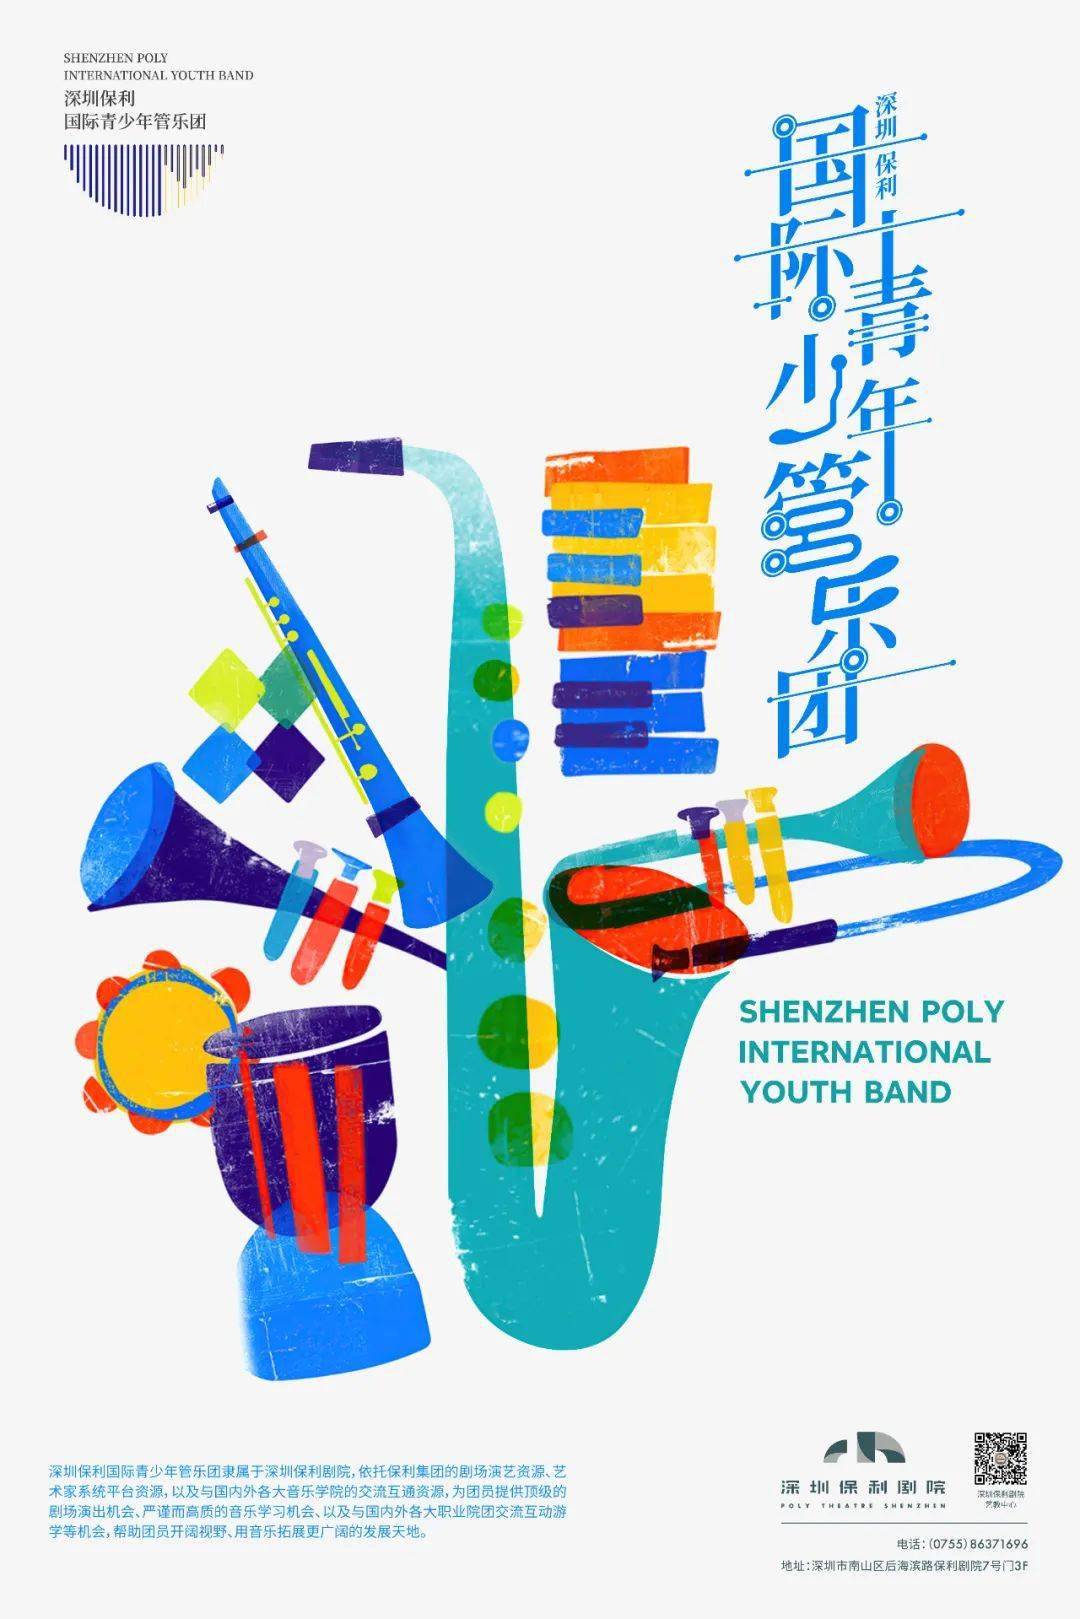 木管组深圳保利国际青少年管乐团招募